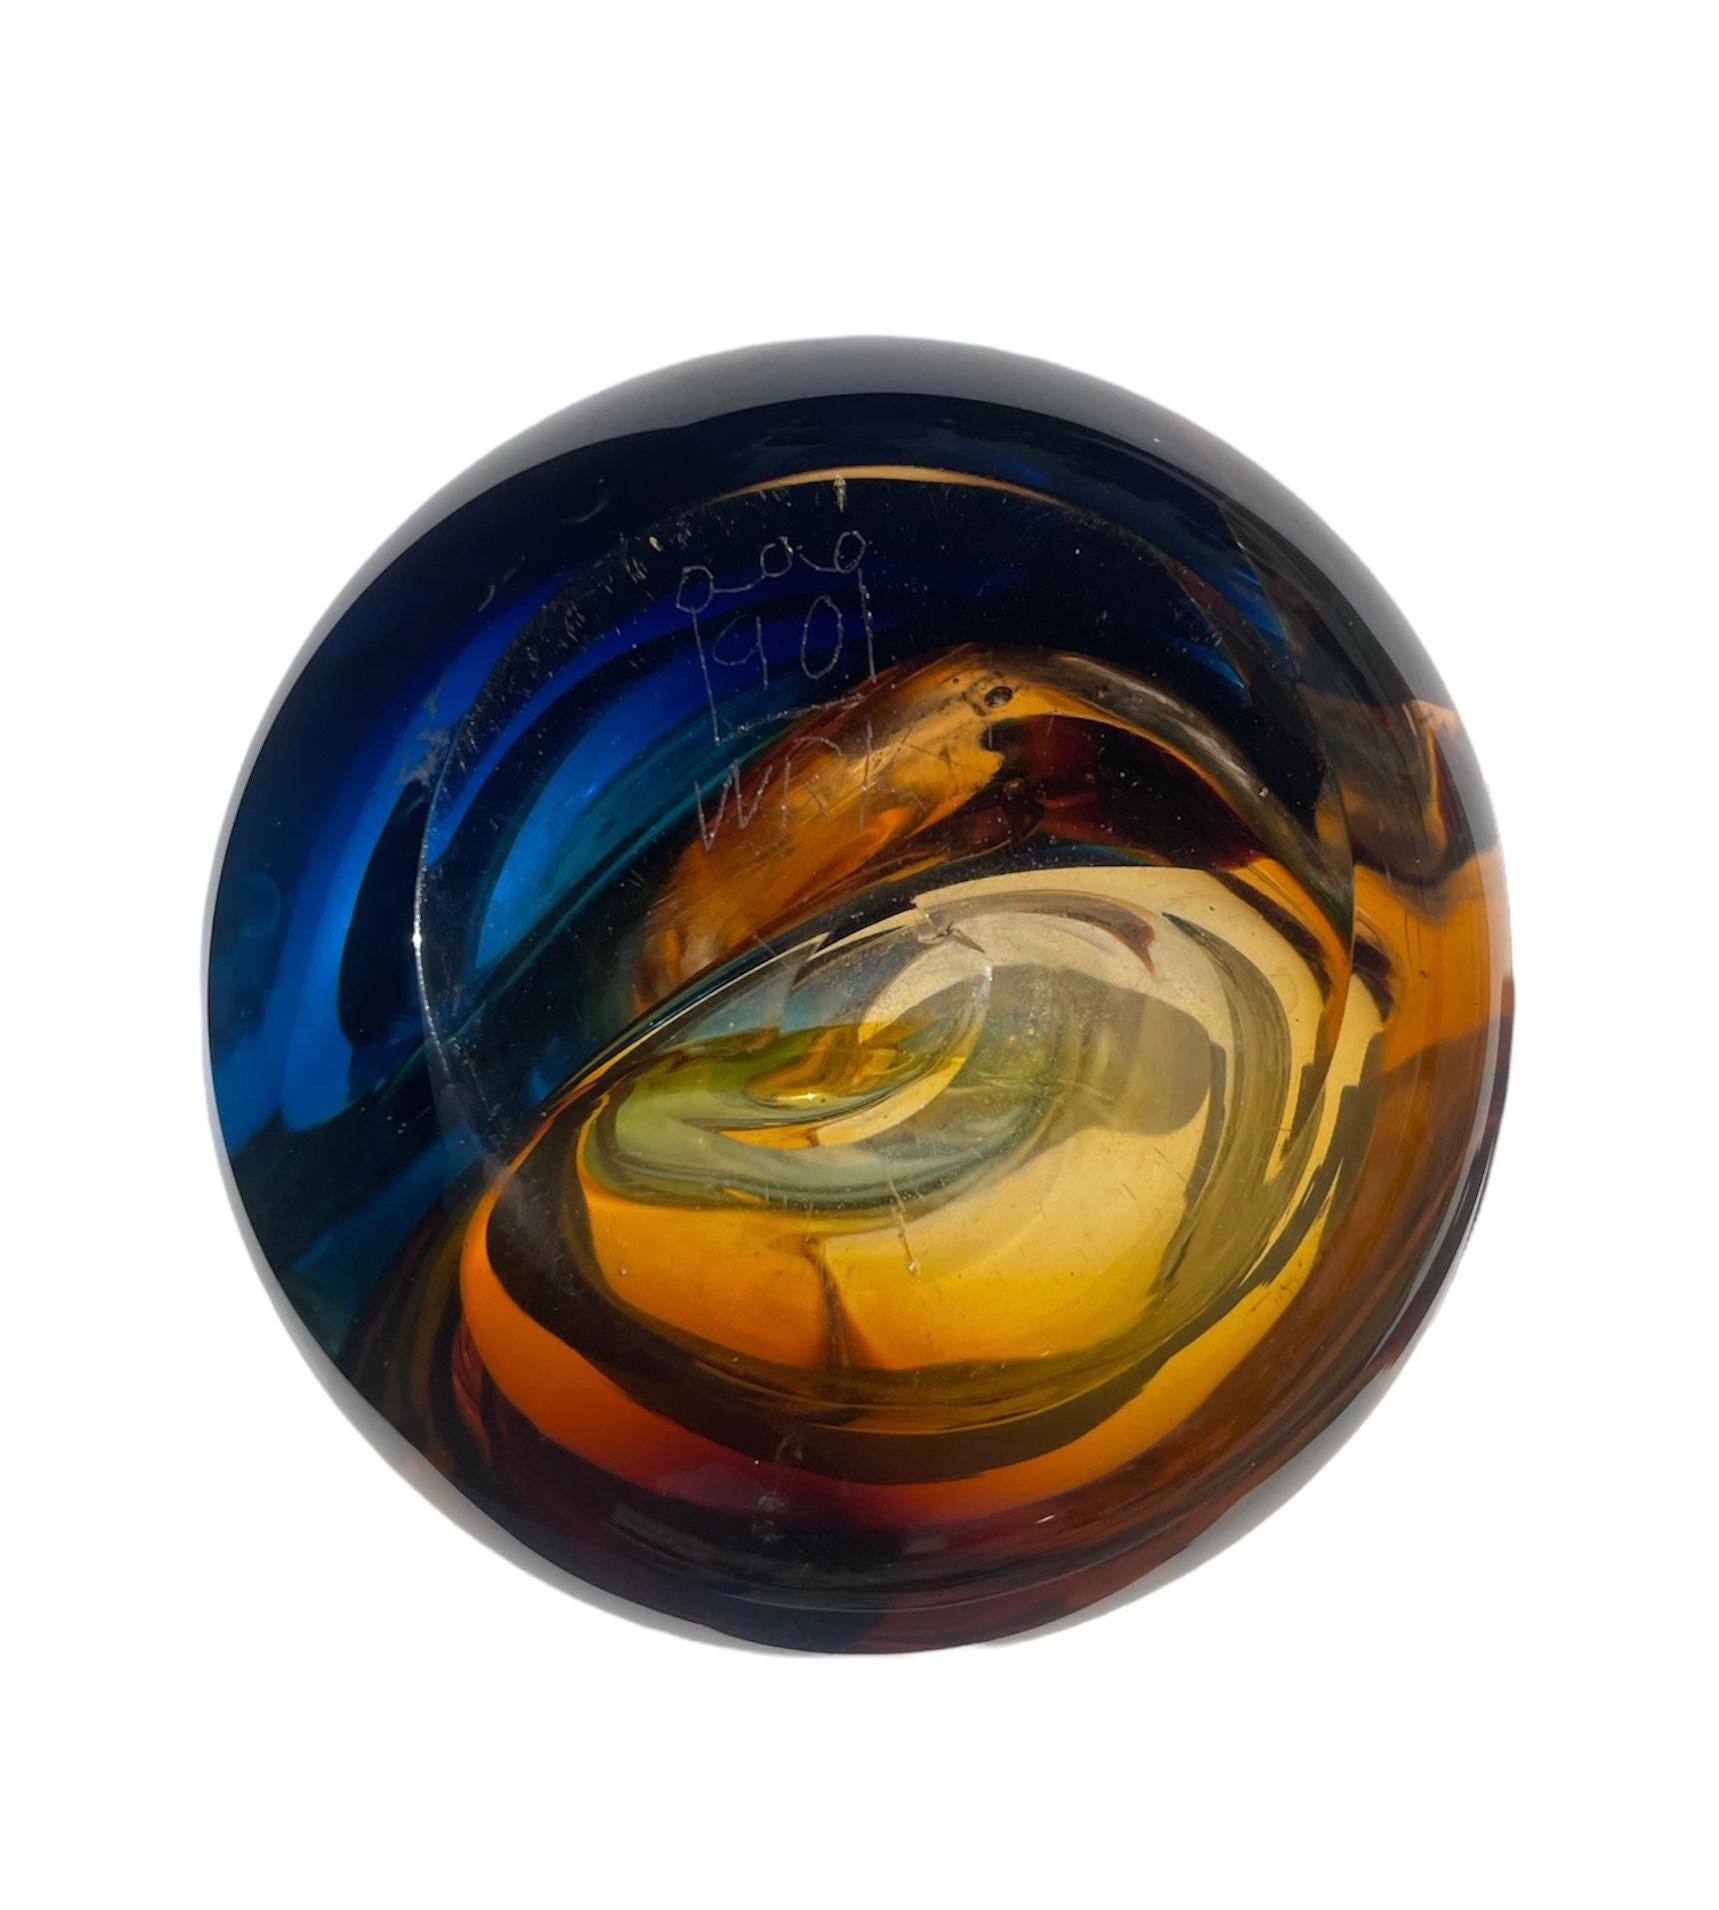 Modern Swirled Vase, Art Glass signed 90 WRK